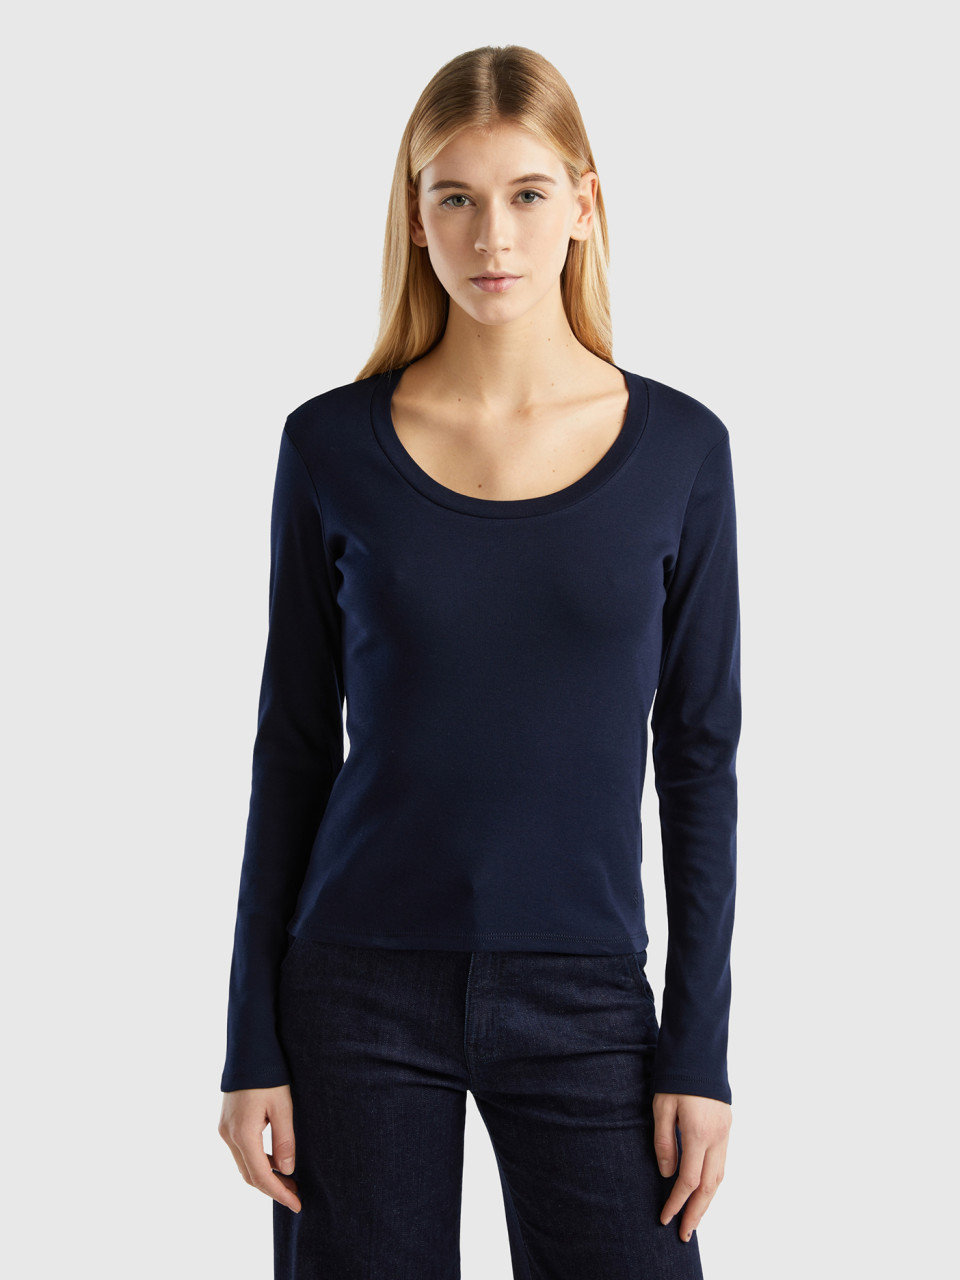 Benetton, Long Sleeve Pure Cotton T-shirt, Dark Blue, Women